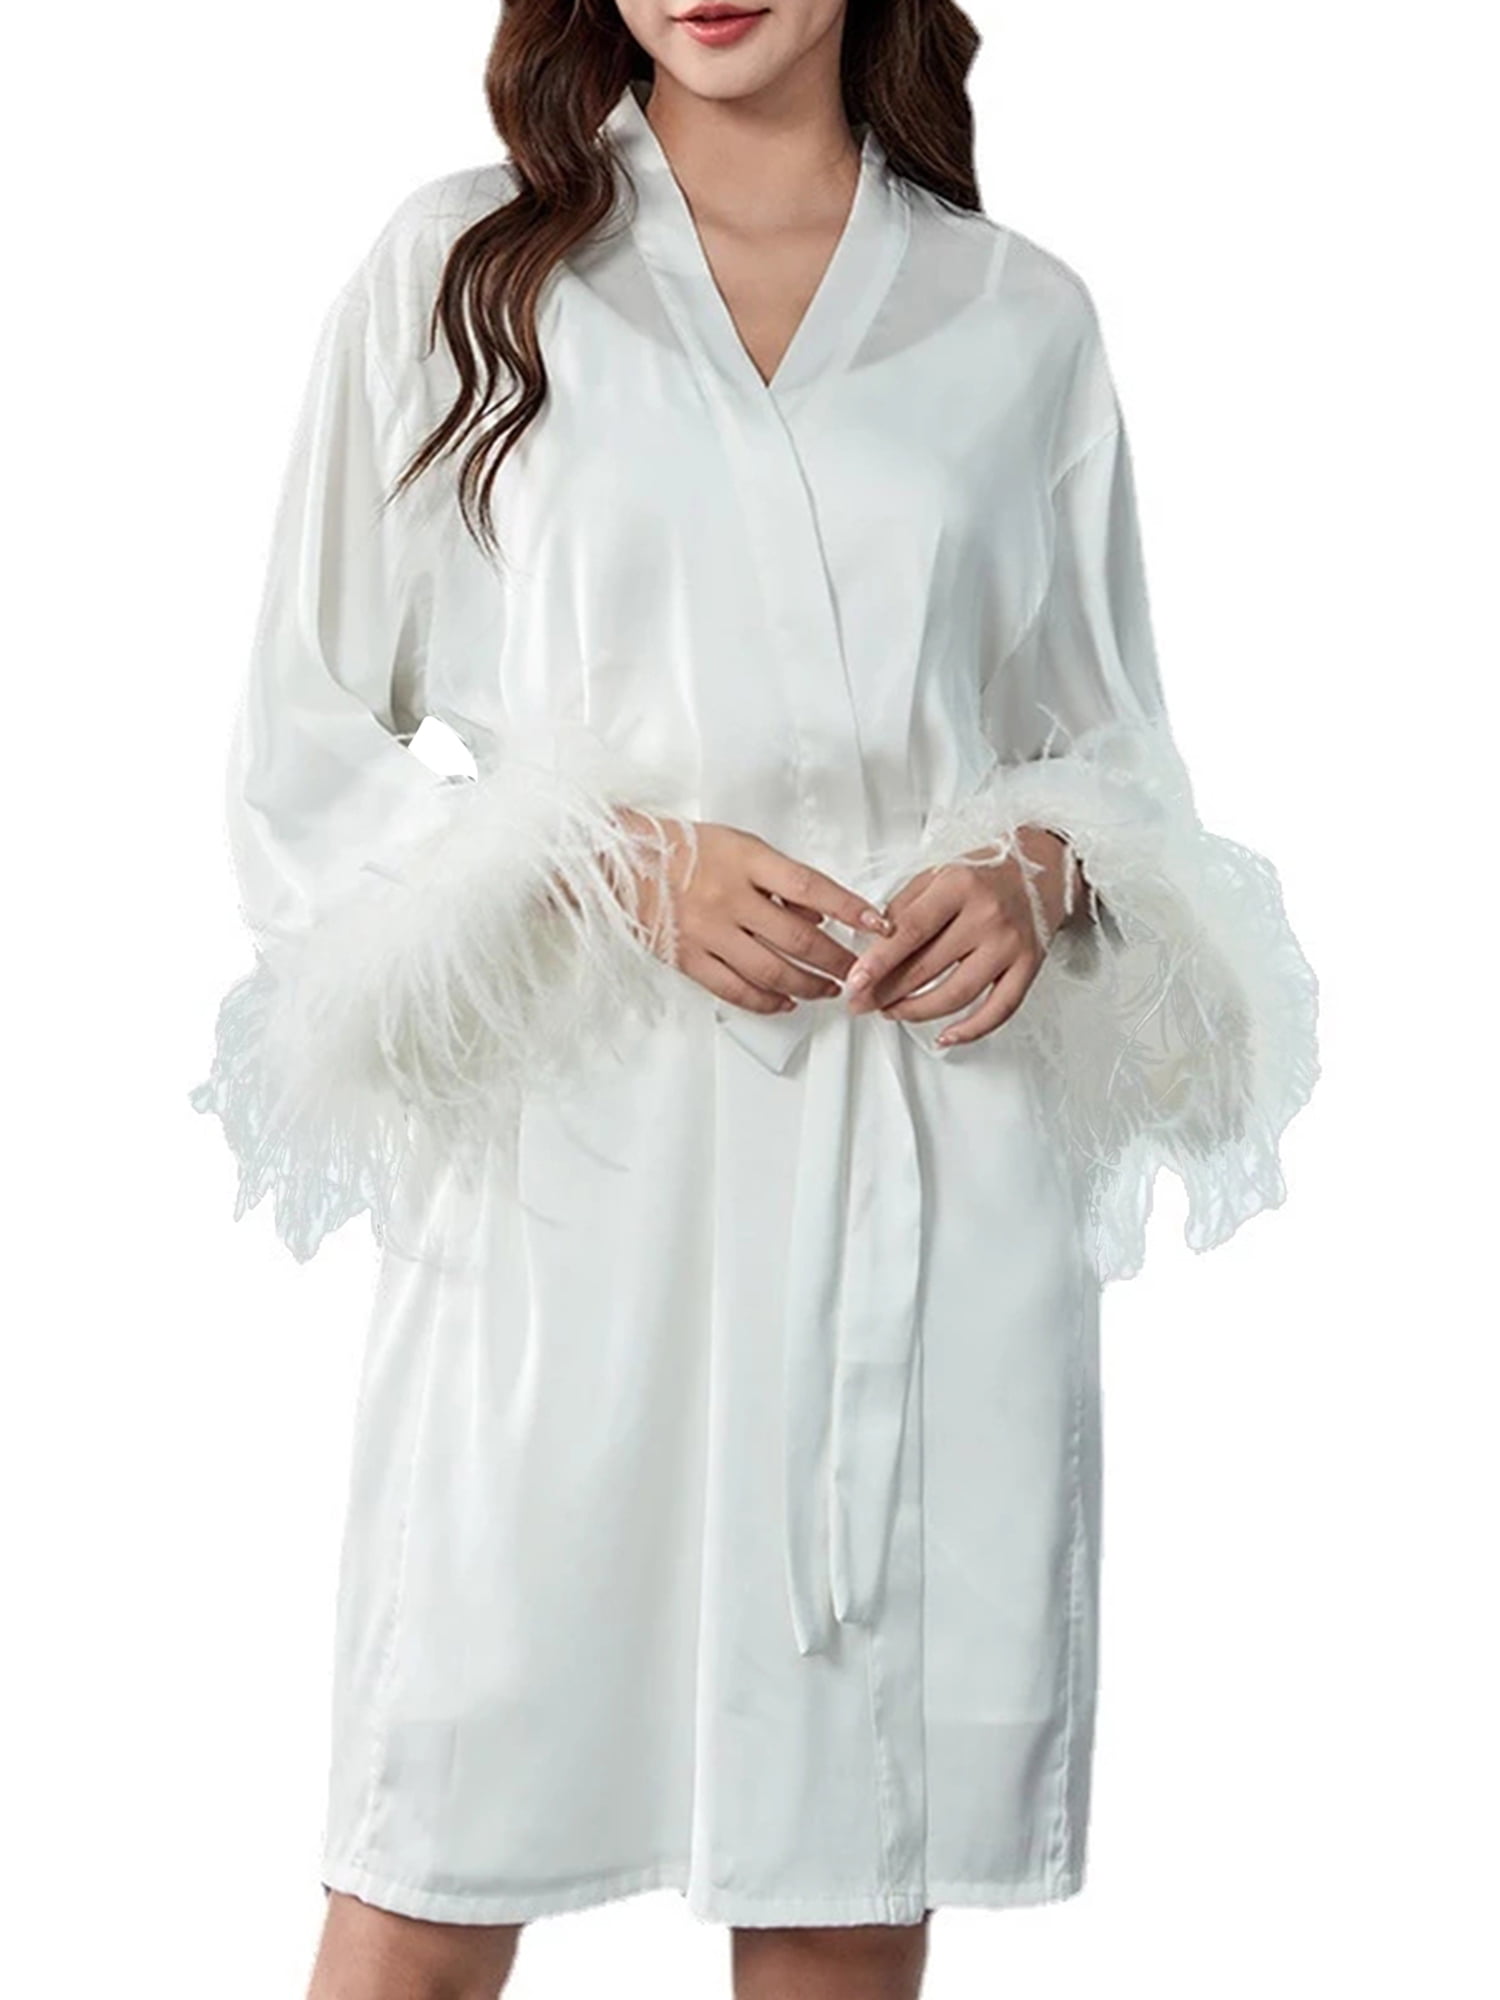 Your complete style on Bridal Nightwear | Libas Loungewear